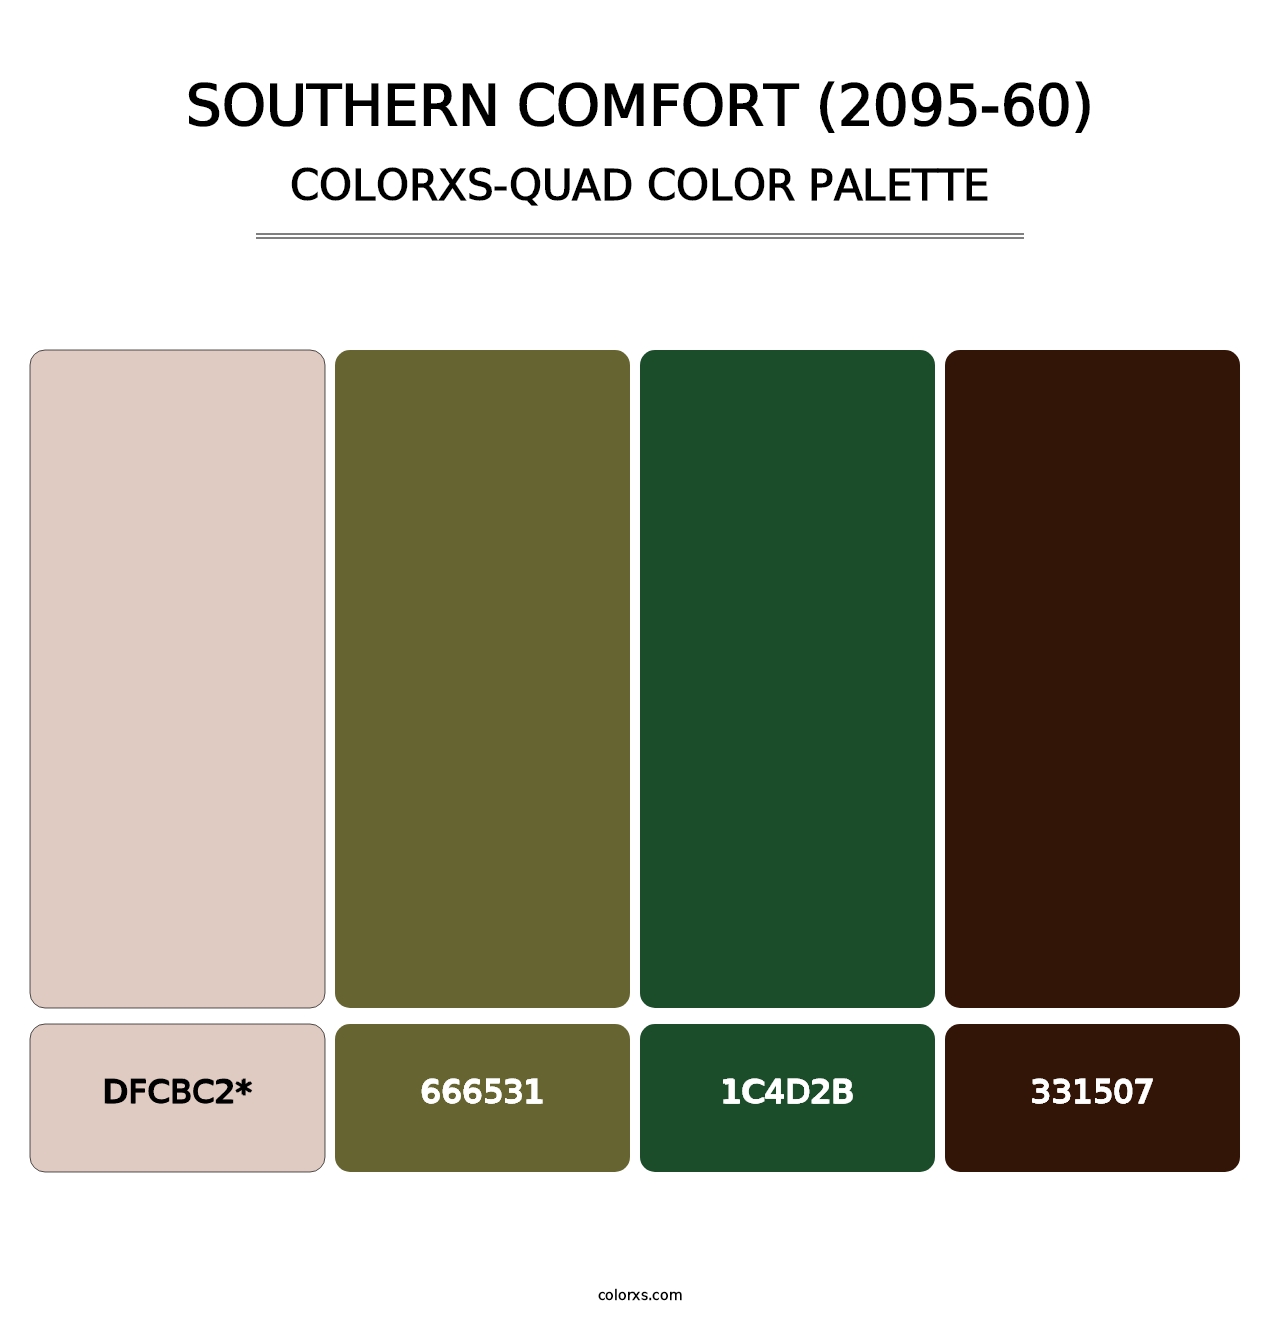 Southern Comfort (2095-60) - Colorxs Quad Palette